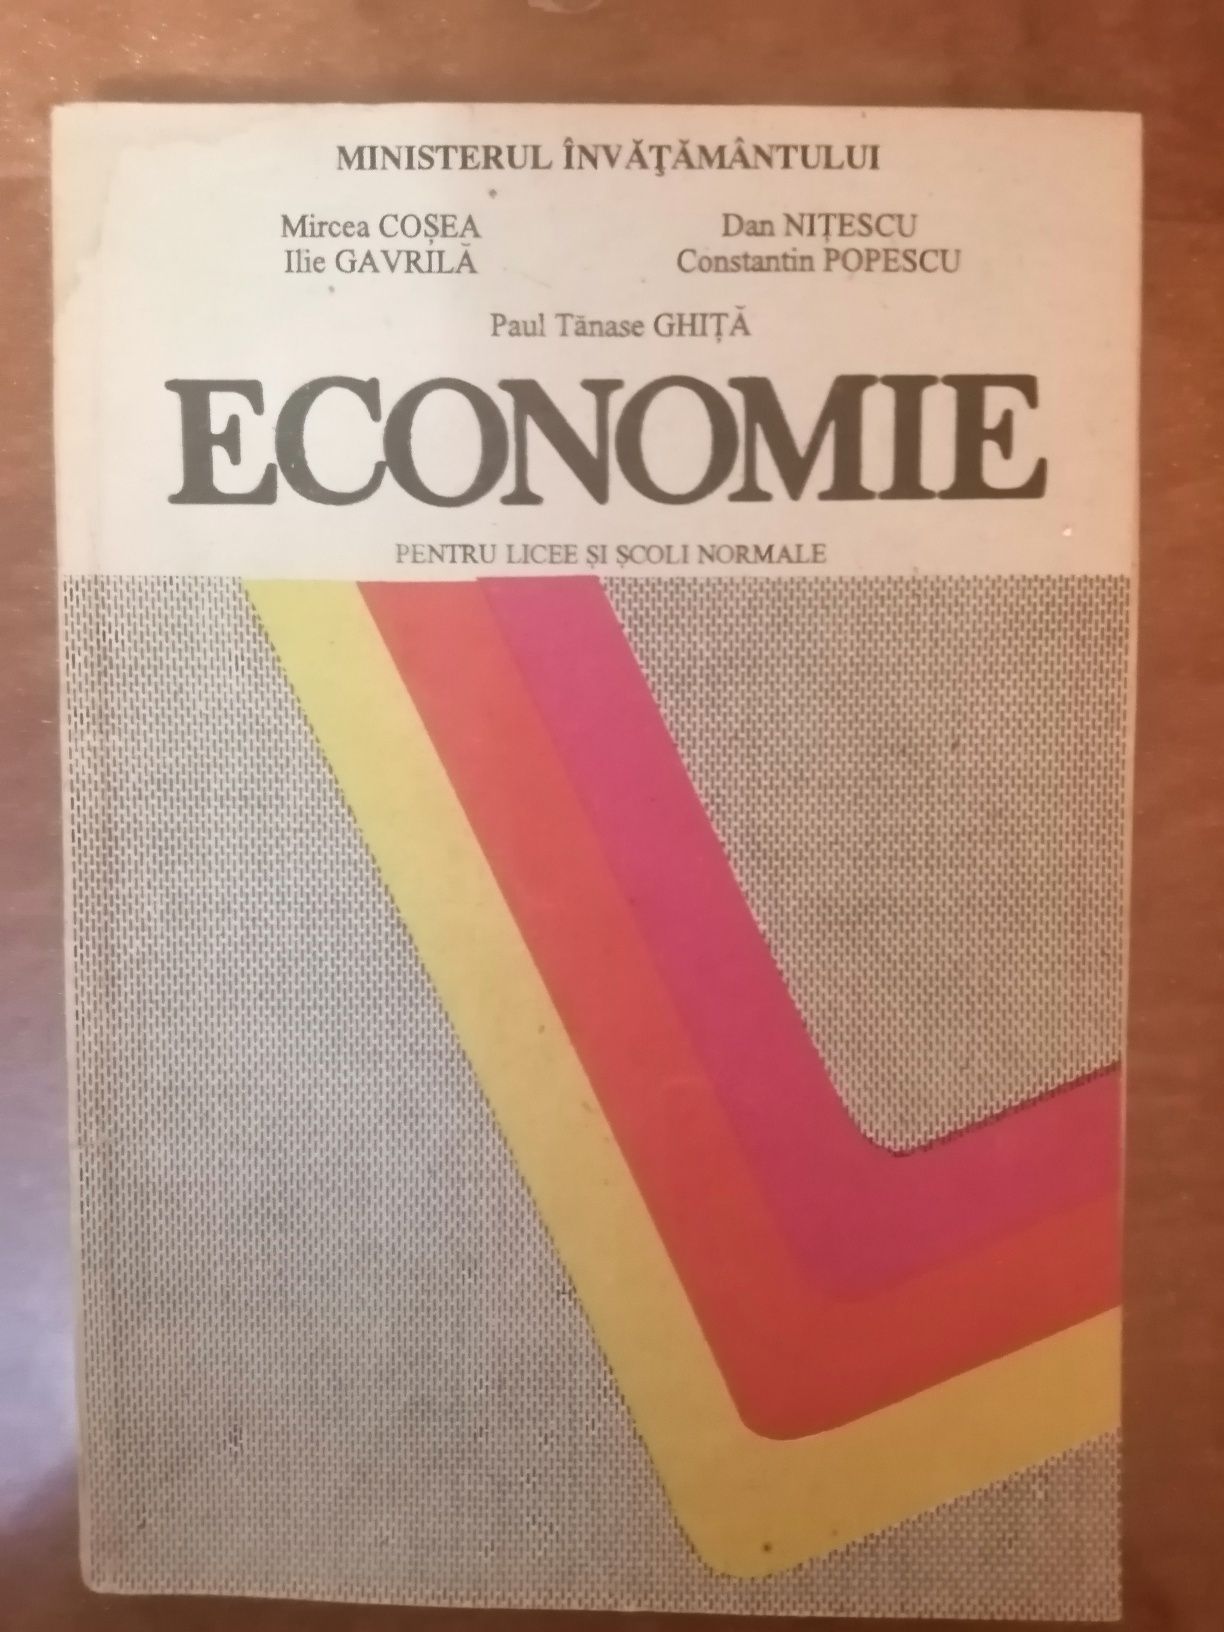 Limba română V, Istorie X, Economie XI, Română X.